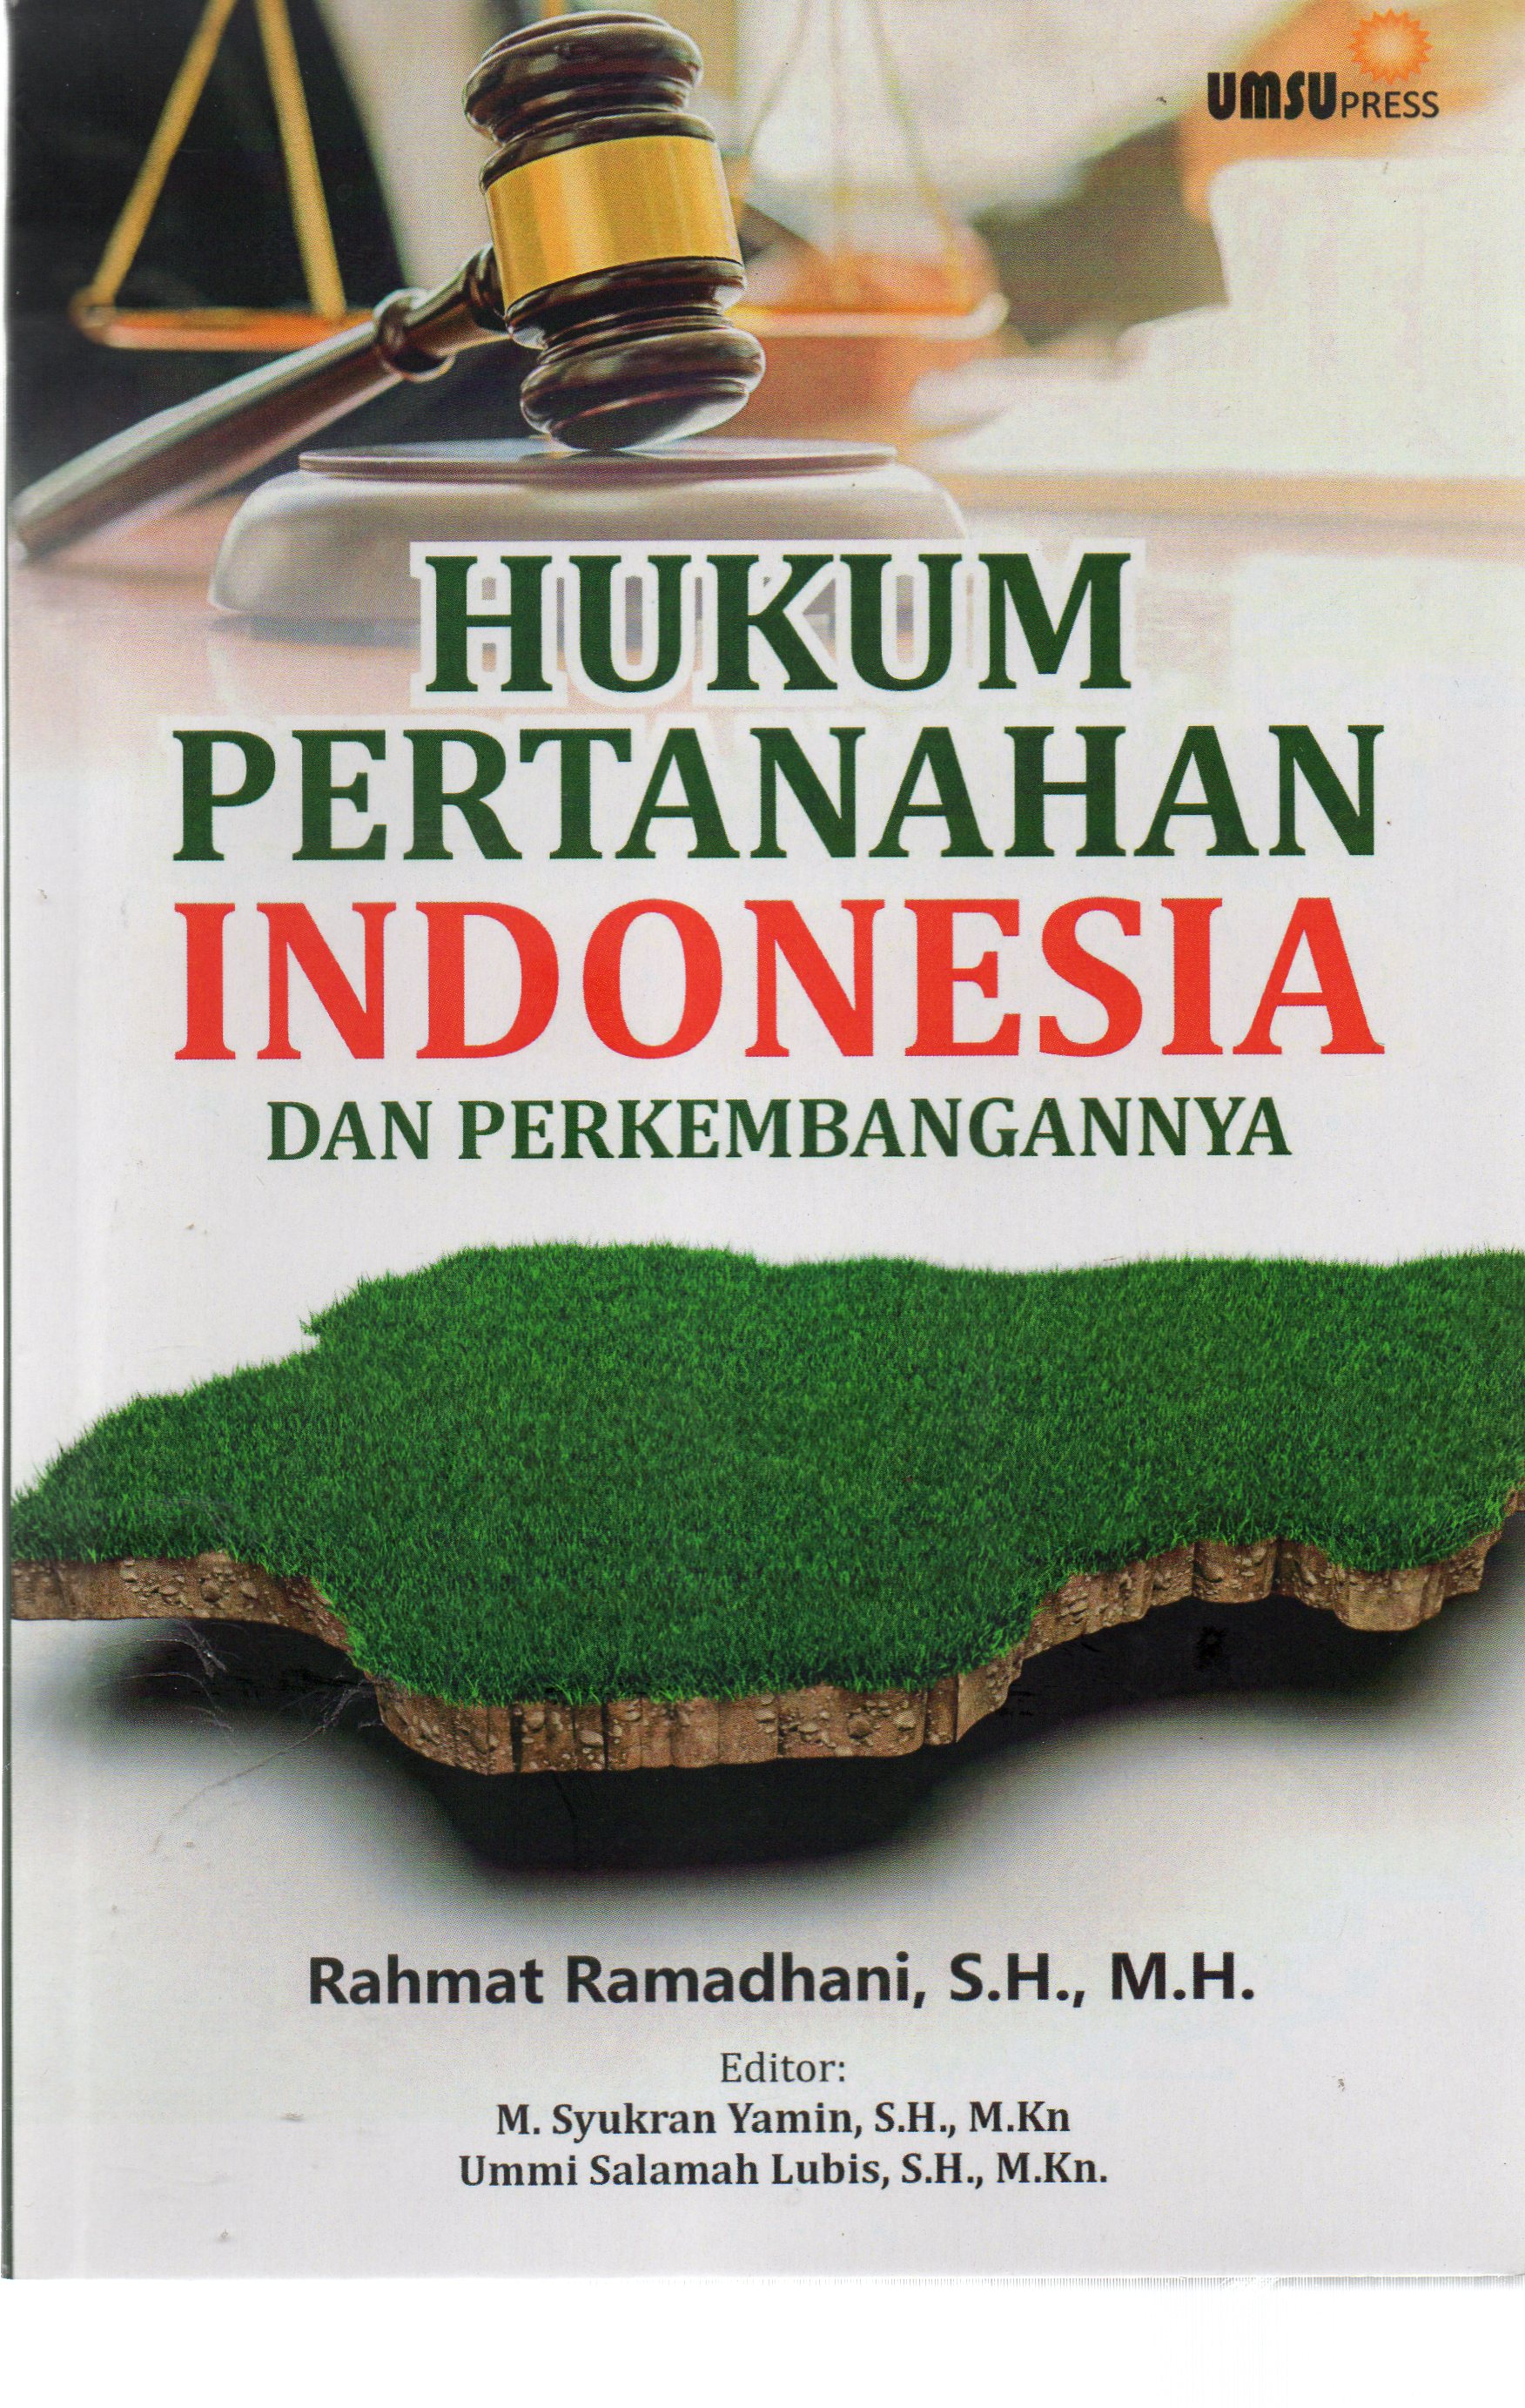 Hukum Pertanahan Indonesia dan Perkembangannya